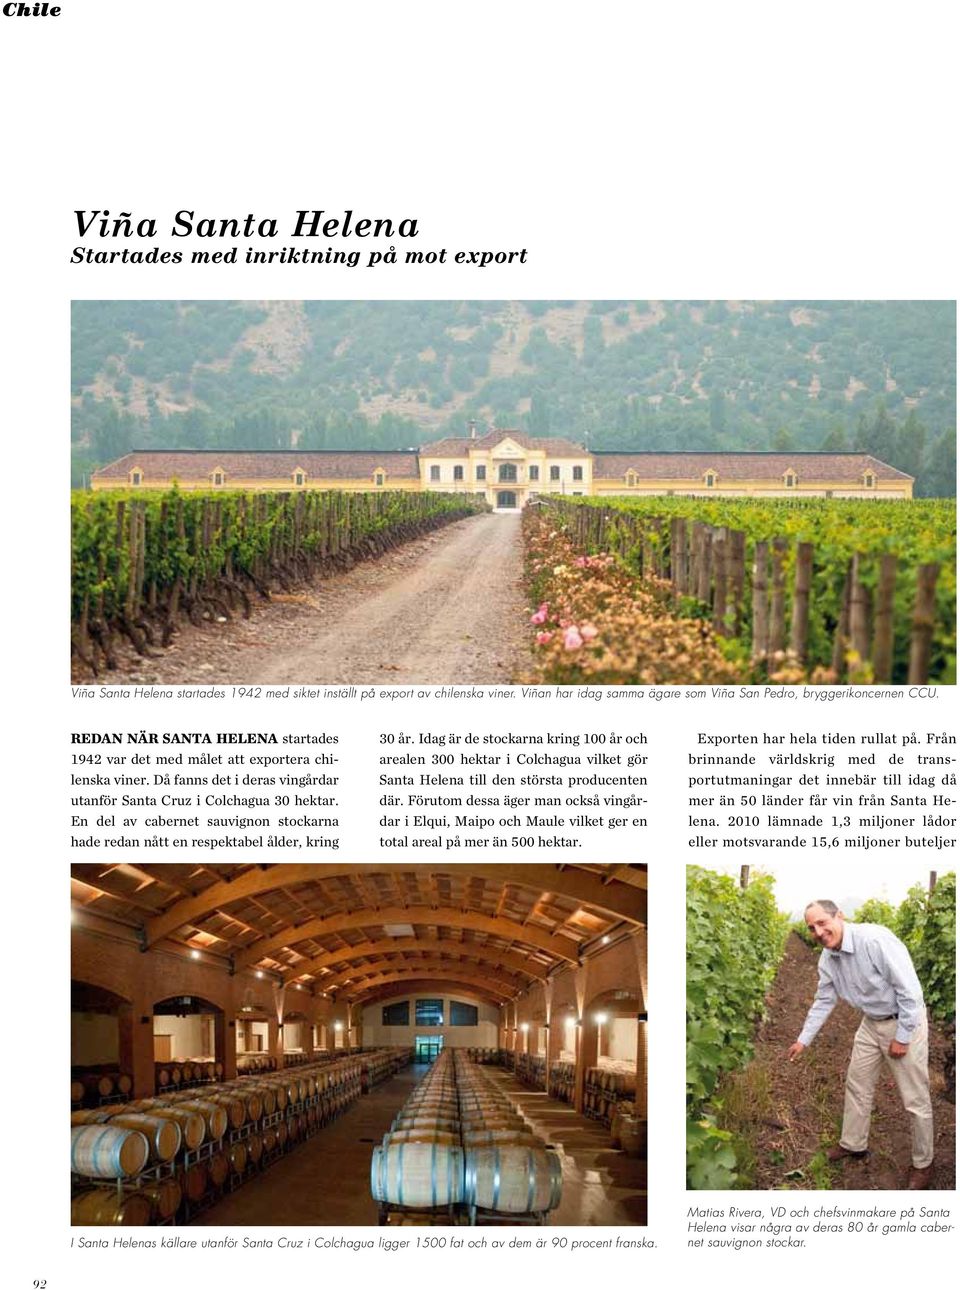 Då fanns det i deras vingårdar utanför Santa Cruz i Colchagua 30 hektar. En del av cabernet sauvignon stockarna hade redan nått en respektabel ålder, kring 30 år.